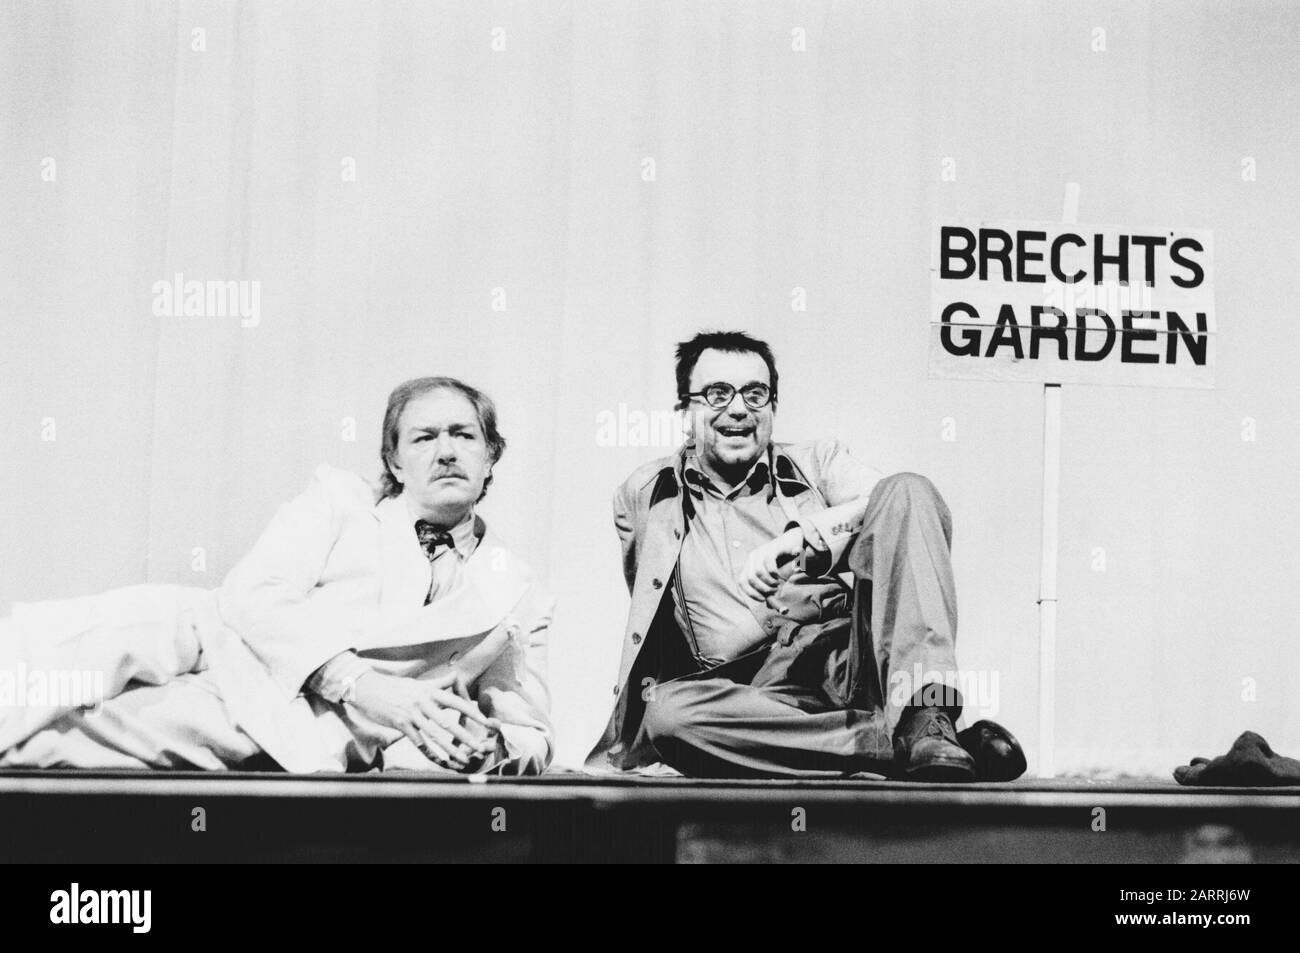 Michael Gambon (als Odon von Horvath) und Ian McDiarmid (als Bertollt Brecht) in ERZÄHLUNGEN AUS HOLLYWOOD von Christopher Hampton unter der Regie von Peter Gill am National Theatre (NT), London 1983. Sir Michael Gambon, geboren 1940 in Dublin, zog mit 6 Jahren nach London, wurde britischer Staatsbürger. 1998 zum Ritter geschlagen. Mehr-Preisträger, darunter 3 Oliviers und 4 BAFTAs. Ian McDiarmid, geboren 1944, schottischer Schauspieler und Regisseur von Bühne und Leinwand, am bekanntesten für die Darstellung von Kaiser Palpatine in der Star Wars-Filmreihe. Gewinner der Olivier und Tony Awards. Stockfoto